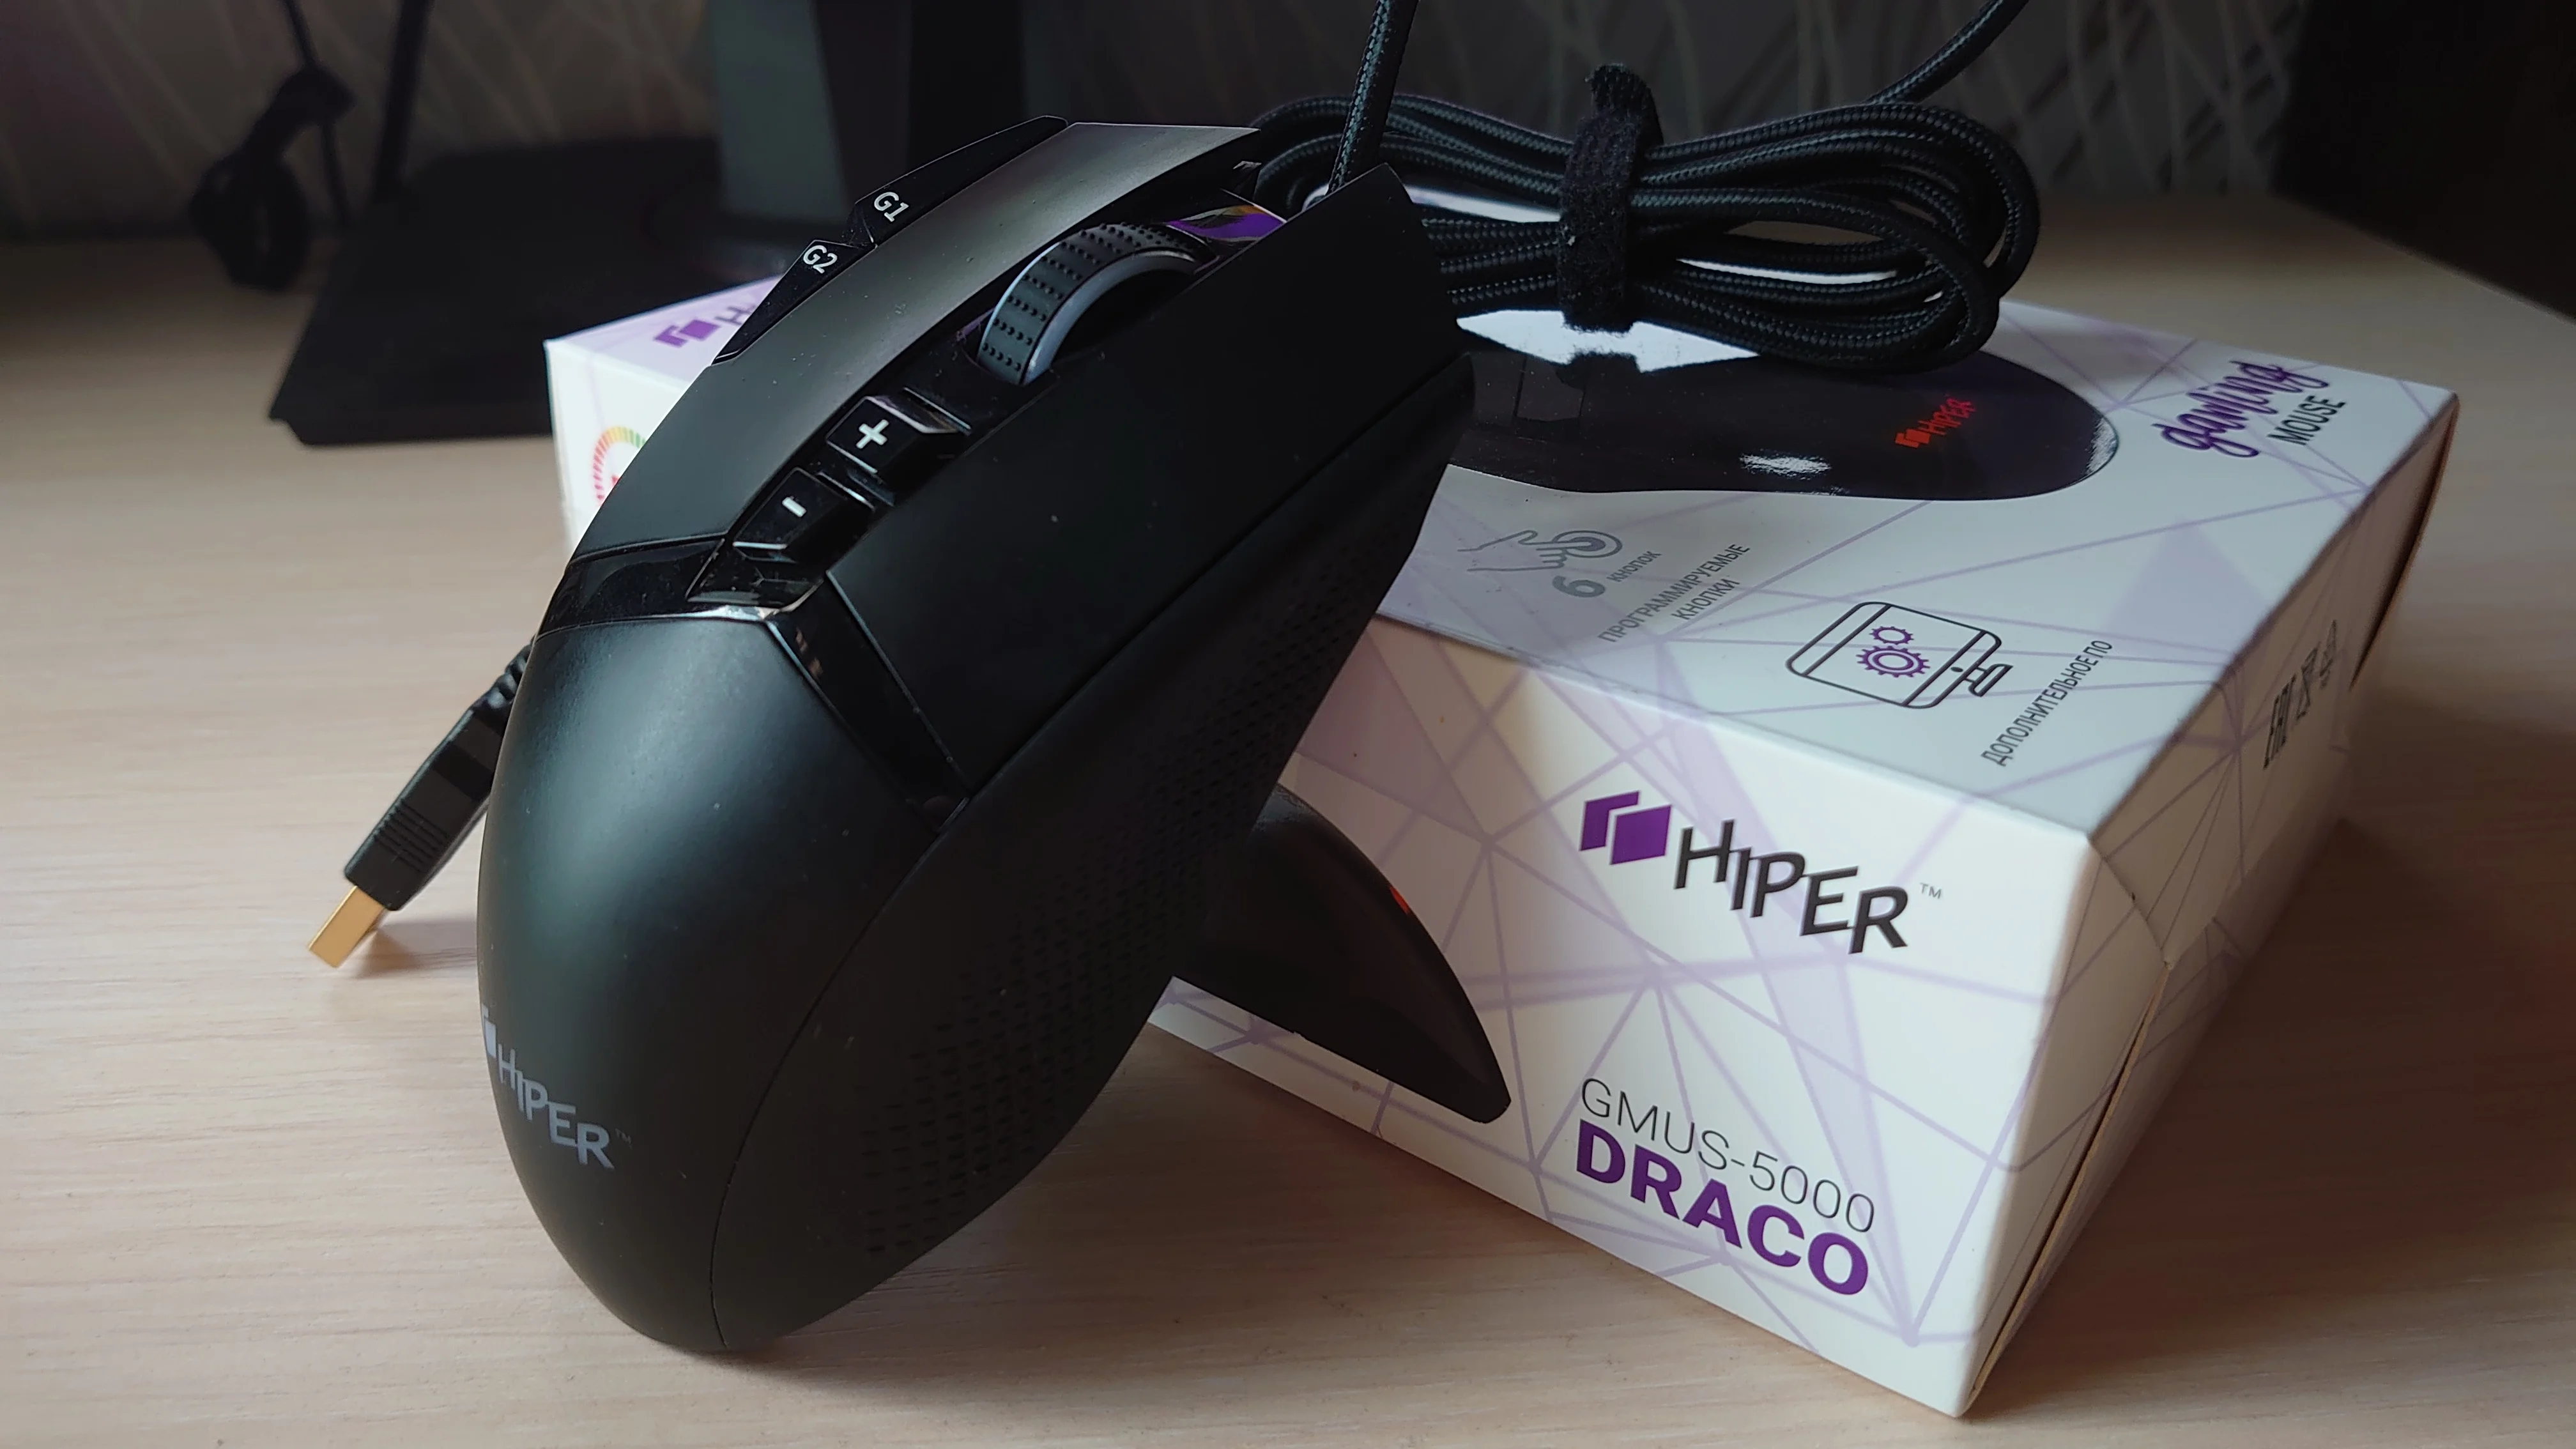 Обзор Hiper Draco: что может бюджетная игровая мышка - фото 7